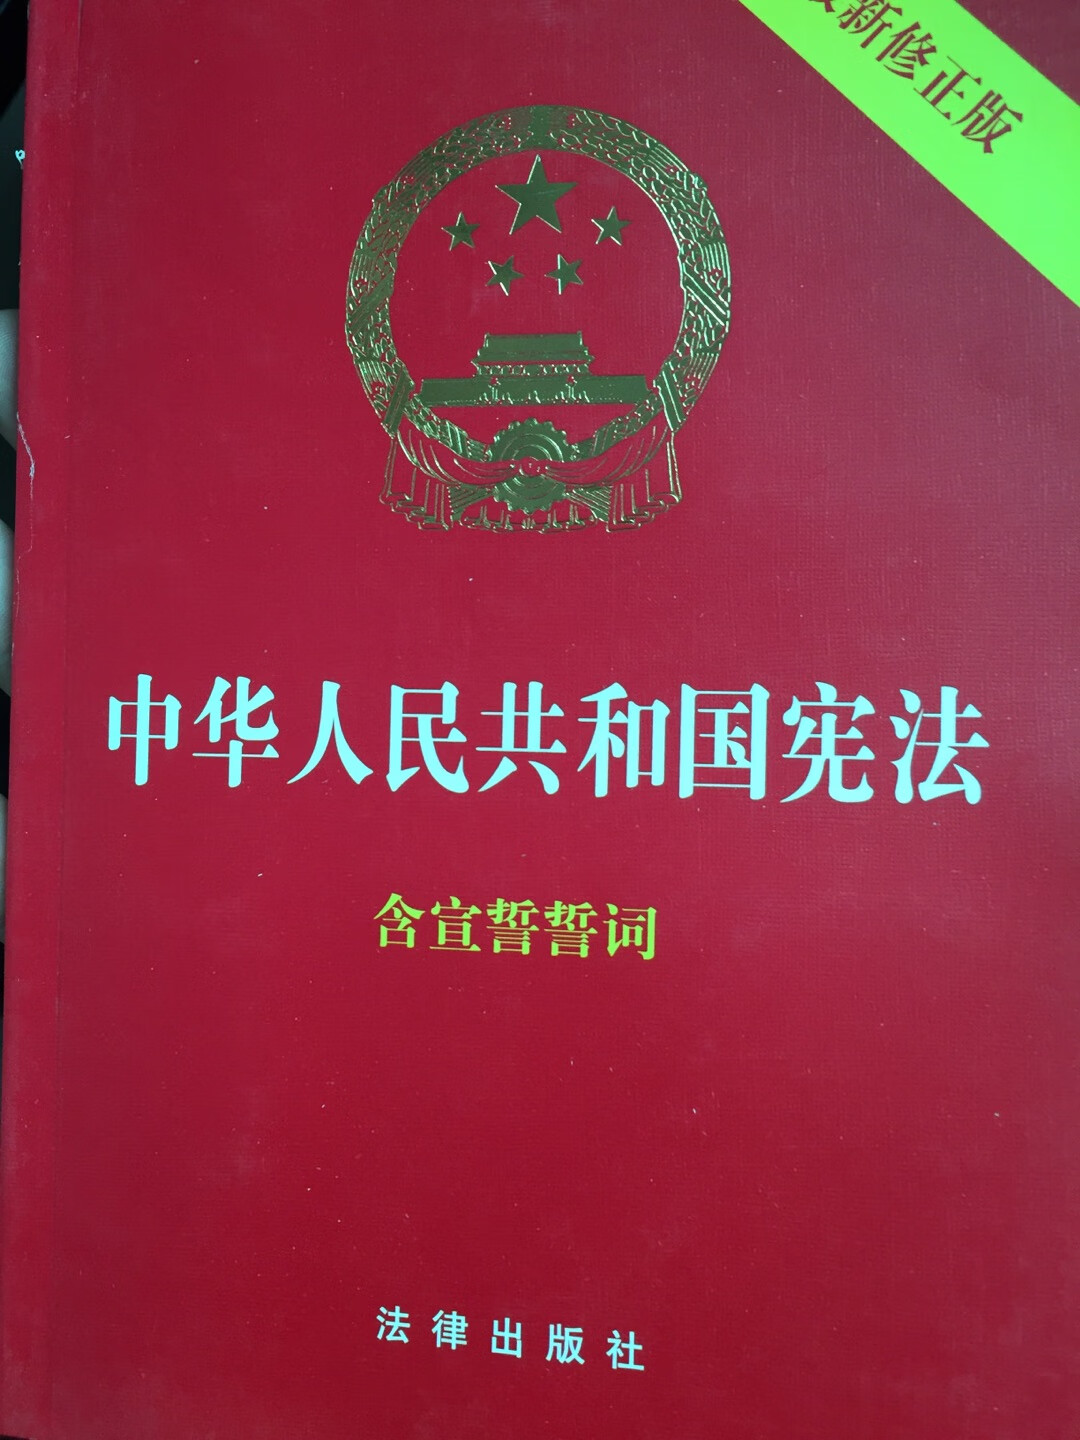 作为中国公民，买来学习一下，很有必要！